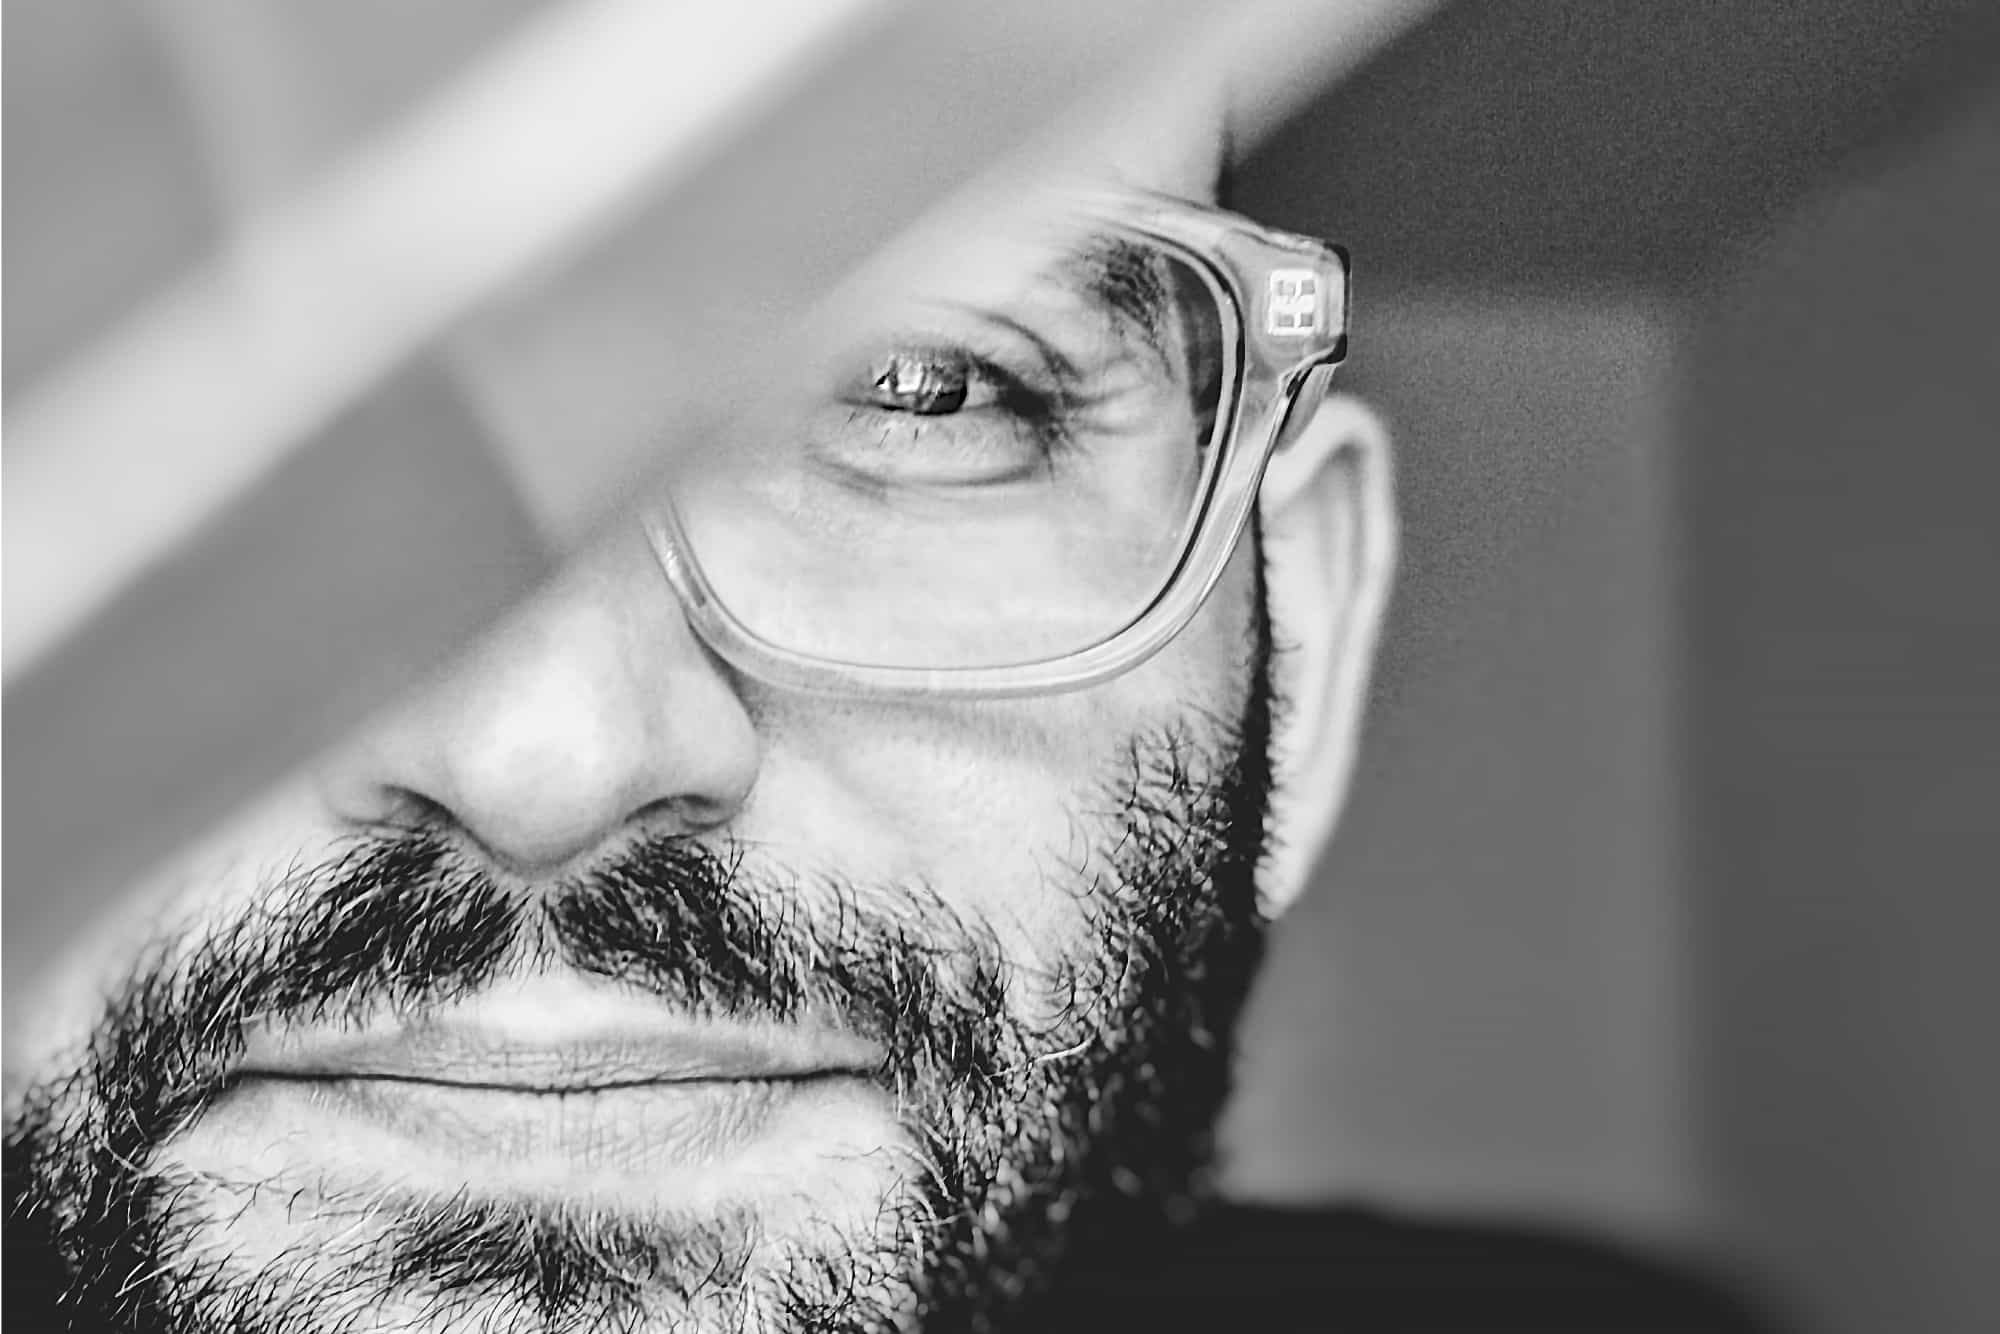 Porträt von Christos Stavrou in Nahaufnahme, zeigt seinen fokussierten Blick und kreative Energie als UX Designer